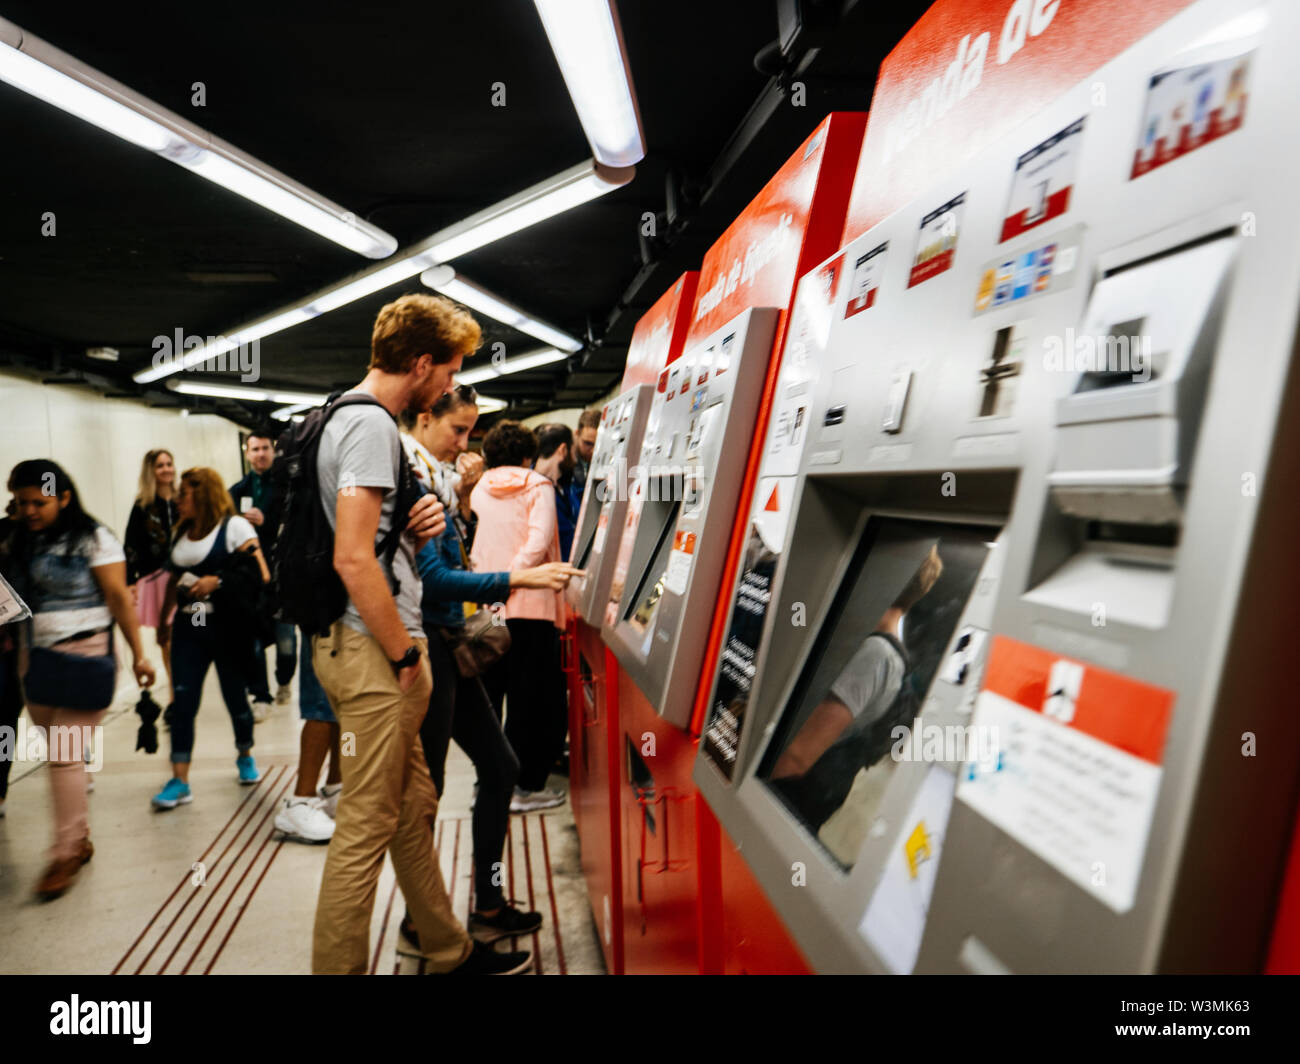 Lisbonne, Espagne - juin 3, 2018 : Les gens d'acheter des tickets de métro métro à l'intérieur des distributeurs automatiques de la station de métro de Barcelone TMB tiquets Banque D'Images